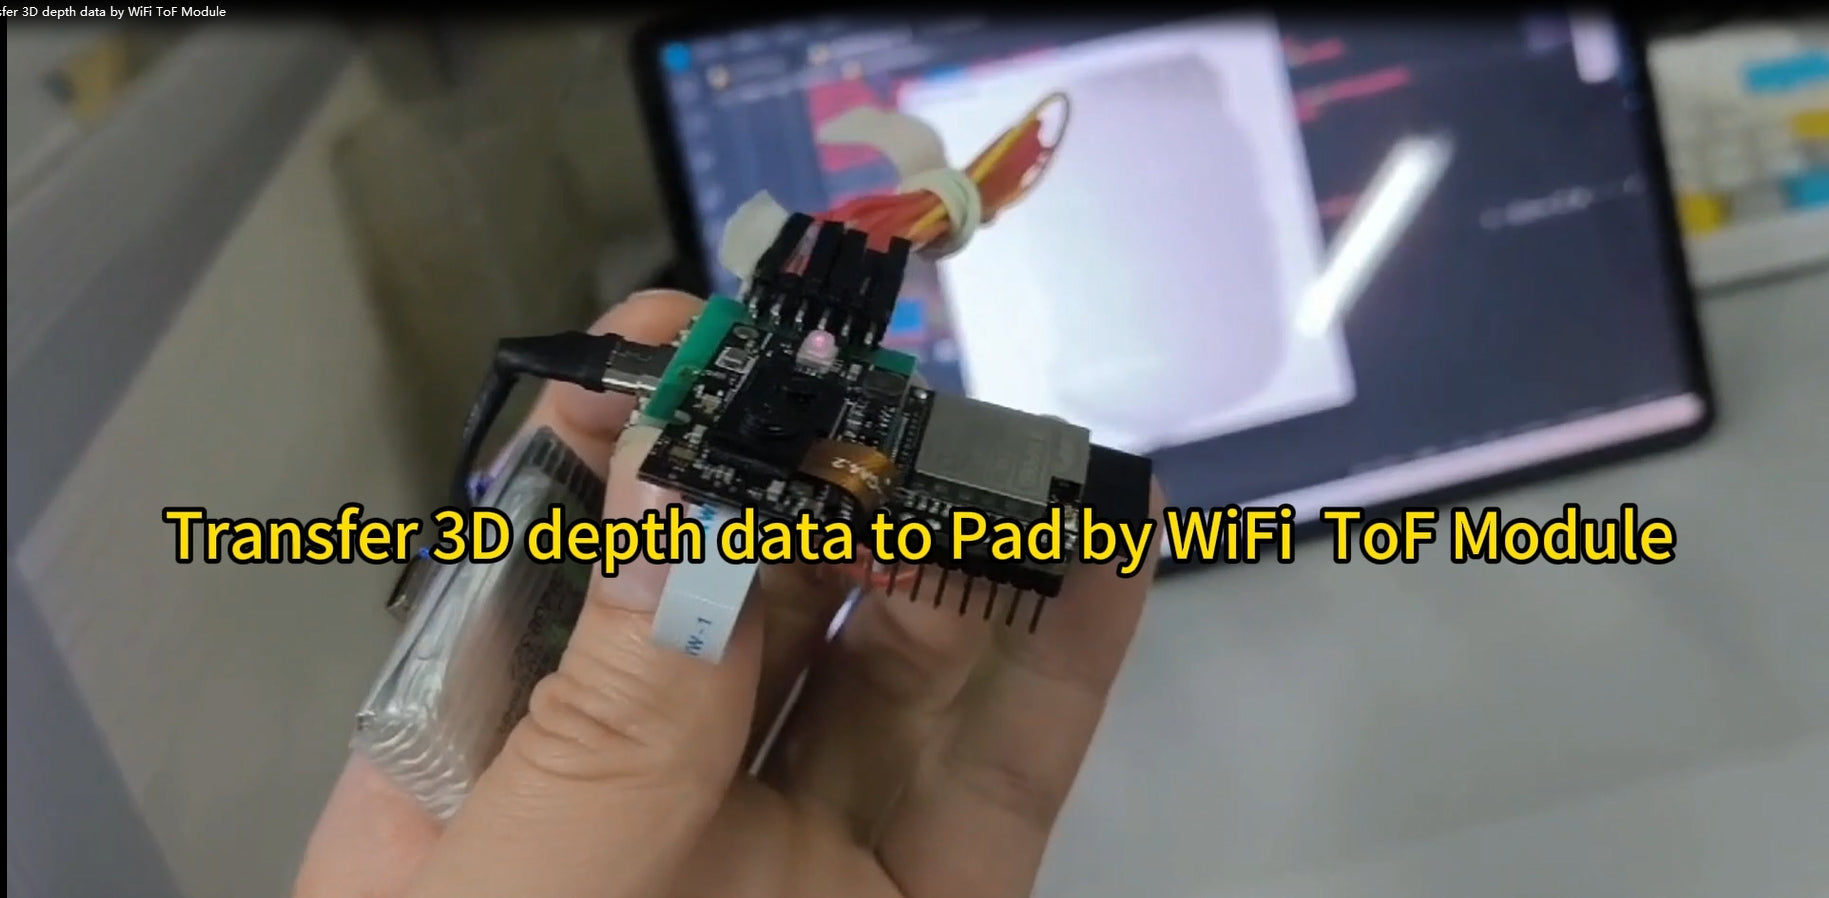 WiFi ToFモジュールによる3D深度データの転送